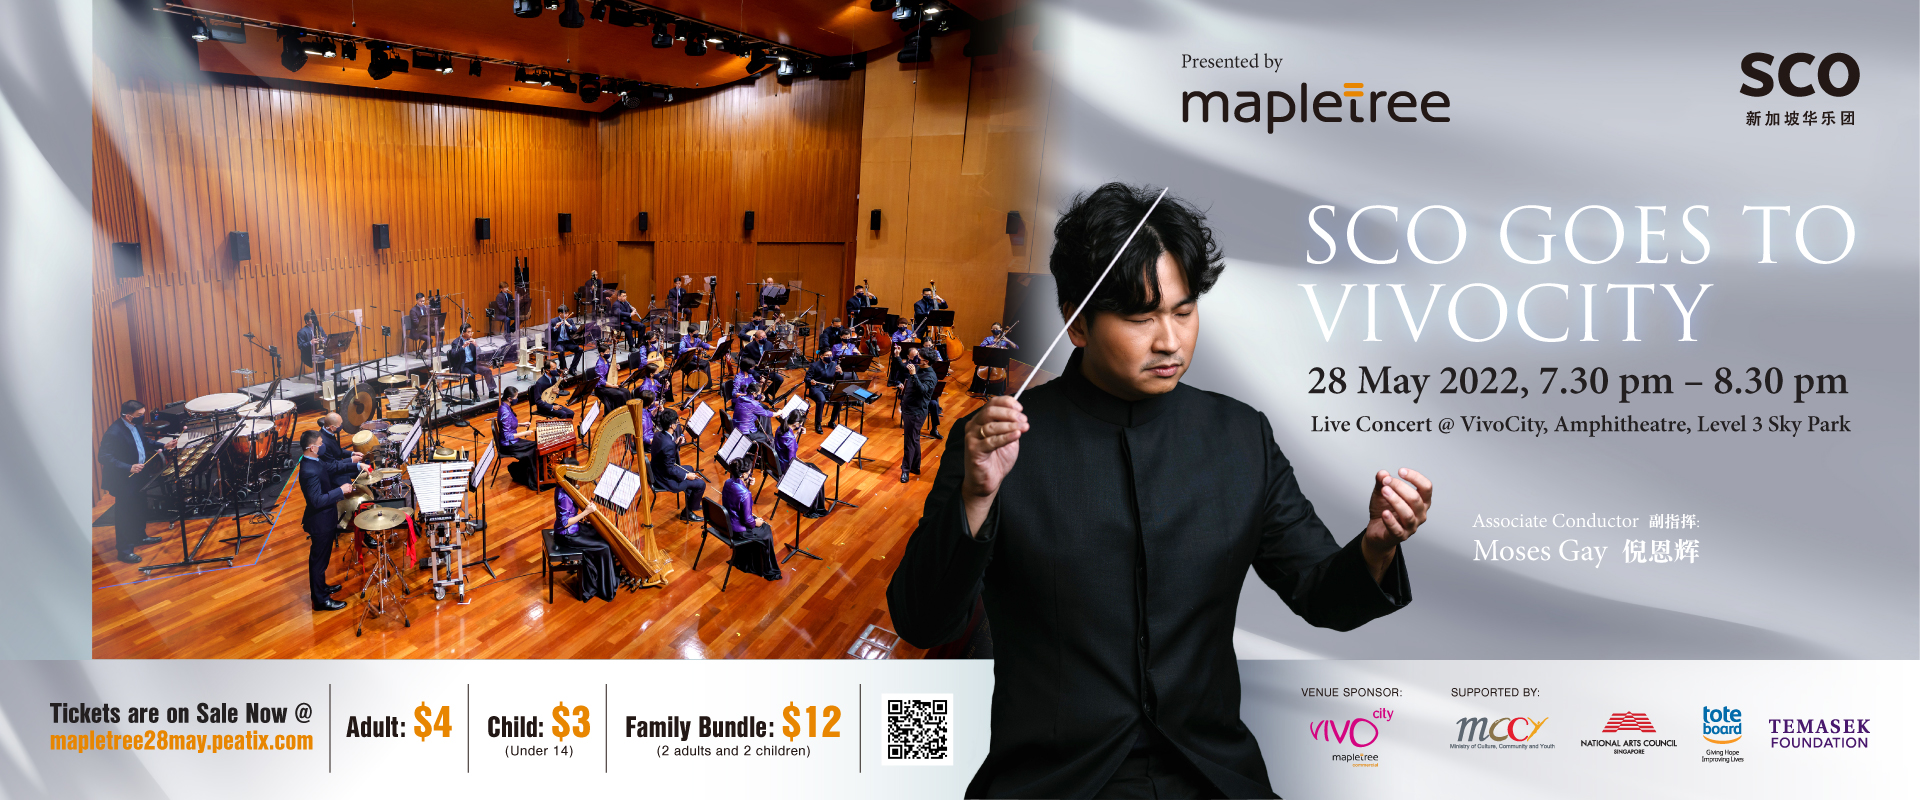 SCO_Mapletree_Concert_1920x800_3 线上音乐会